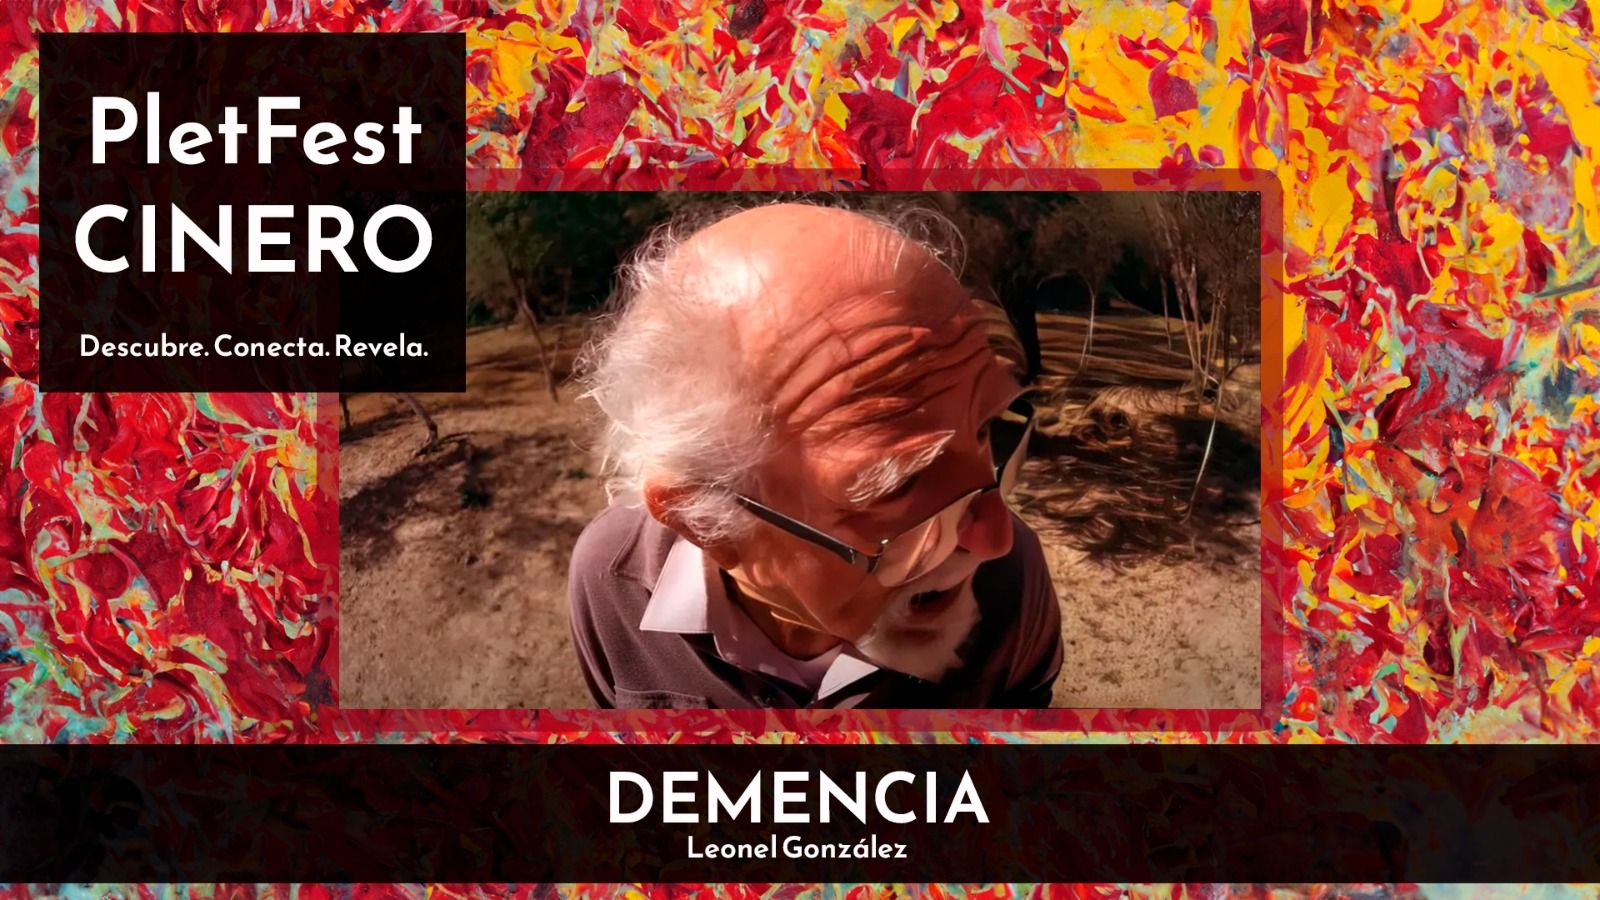 CINERO: "Demencia"